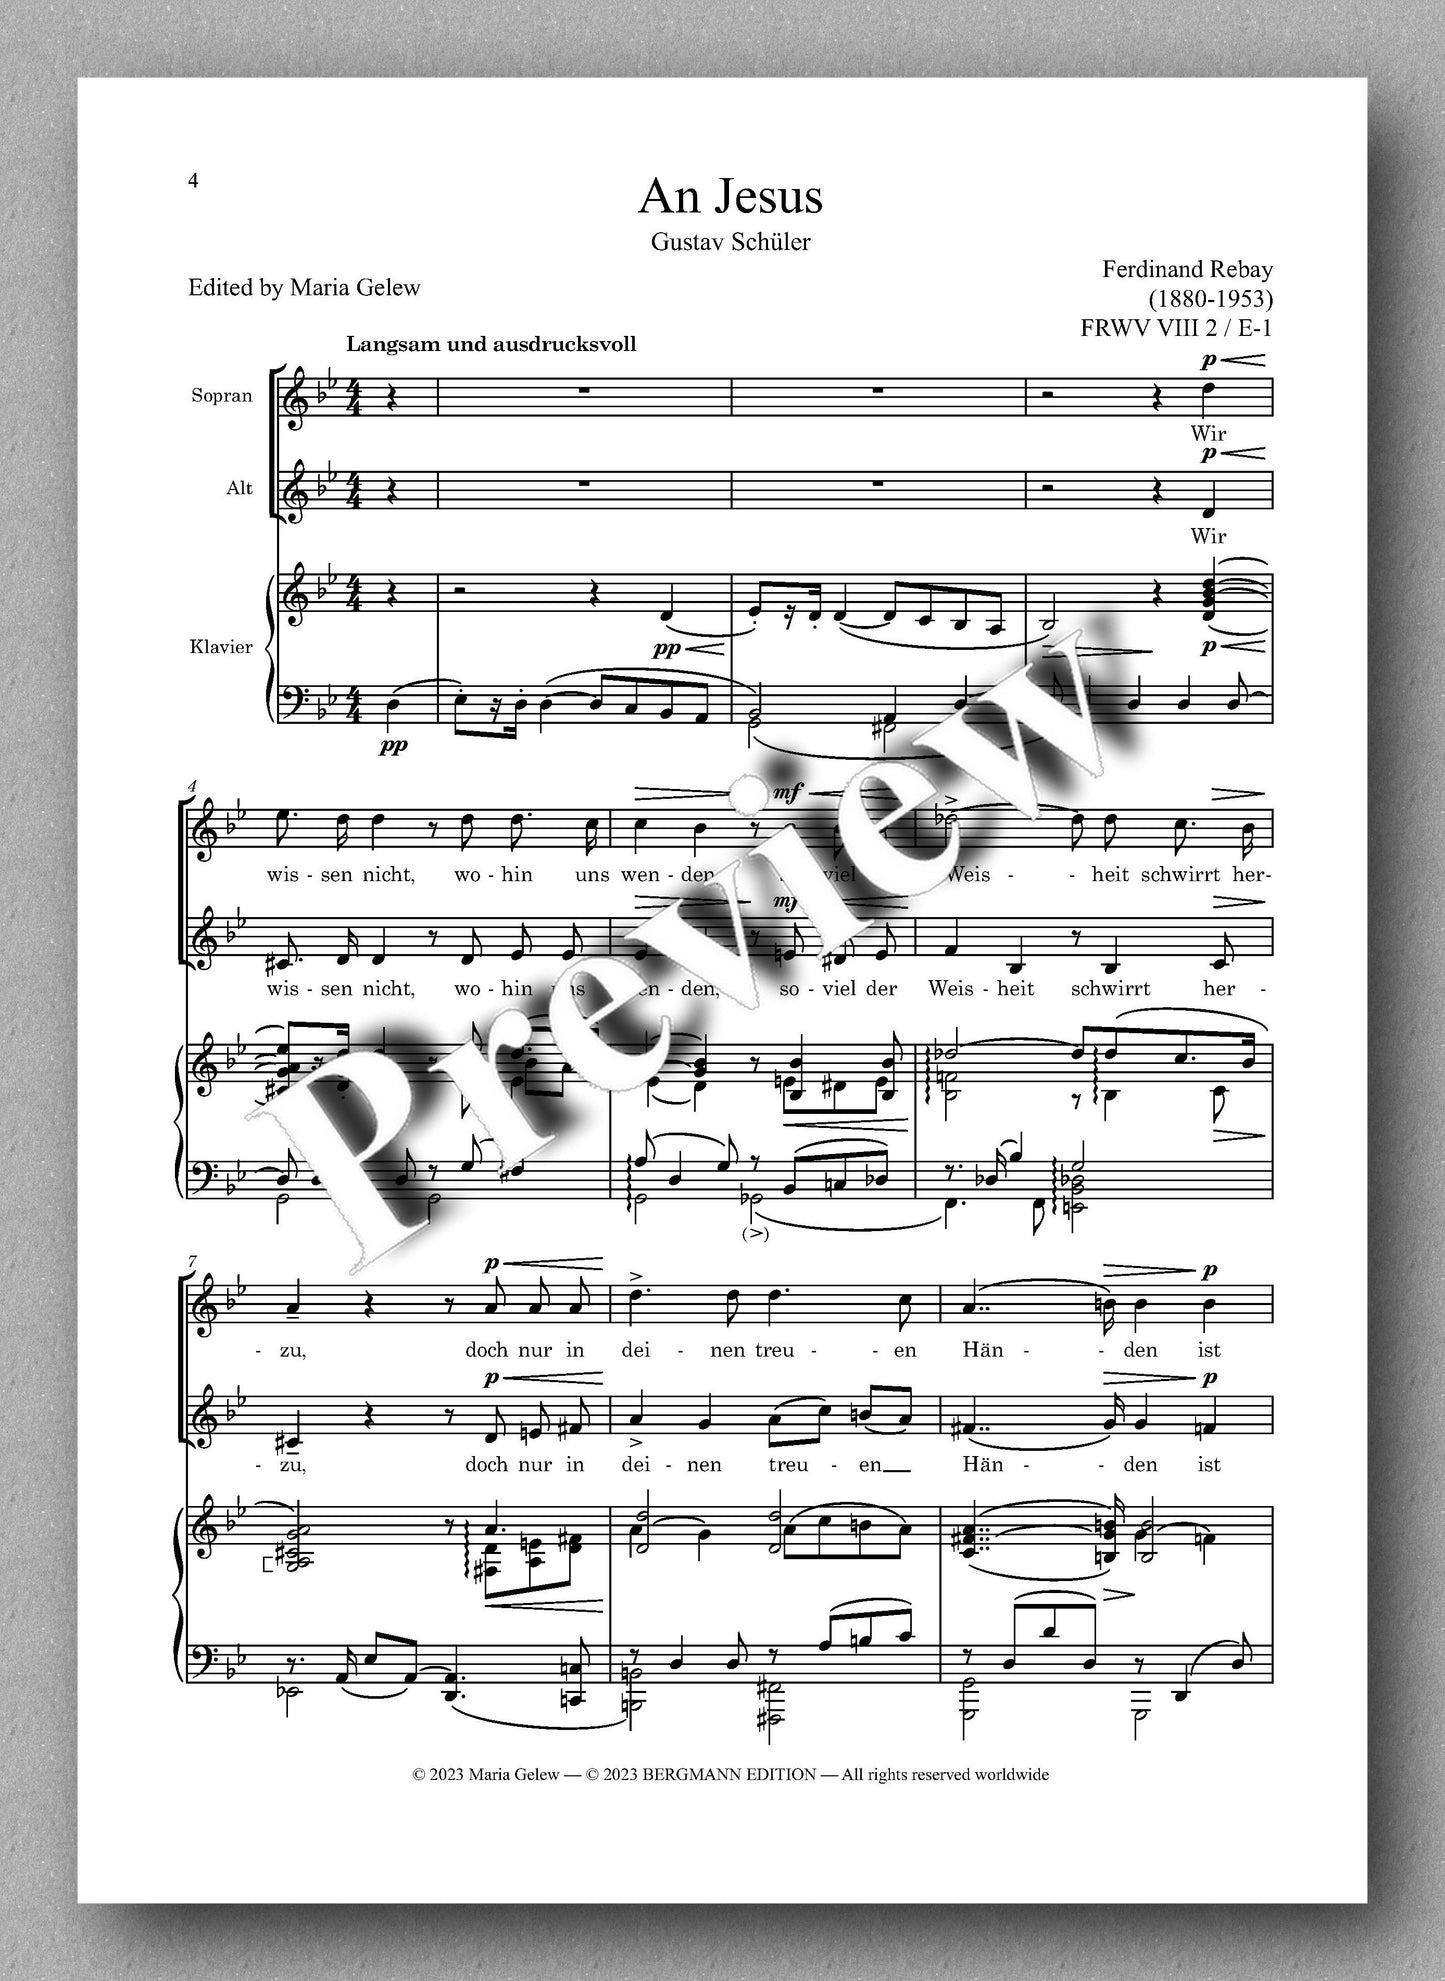 Ferdinand Rebay, Lieder für zwei Singstimmen mit Klavierbegleitung - preview of the music score 1